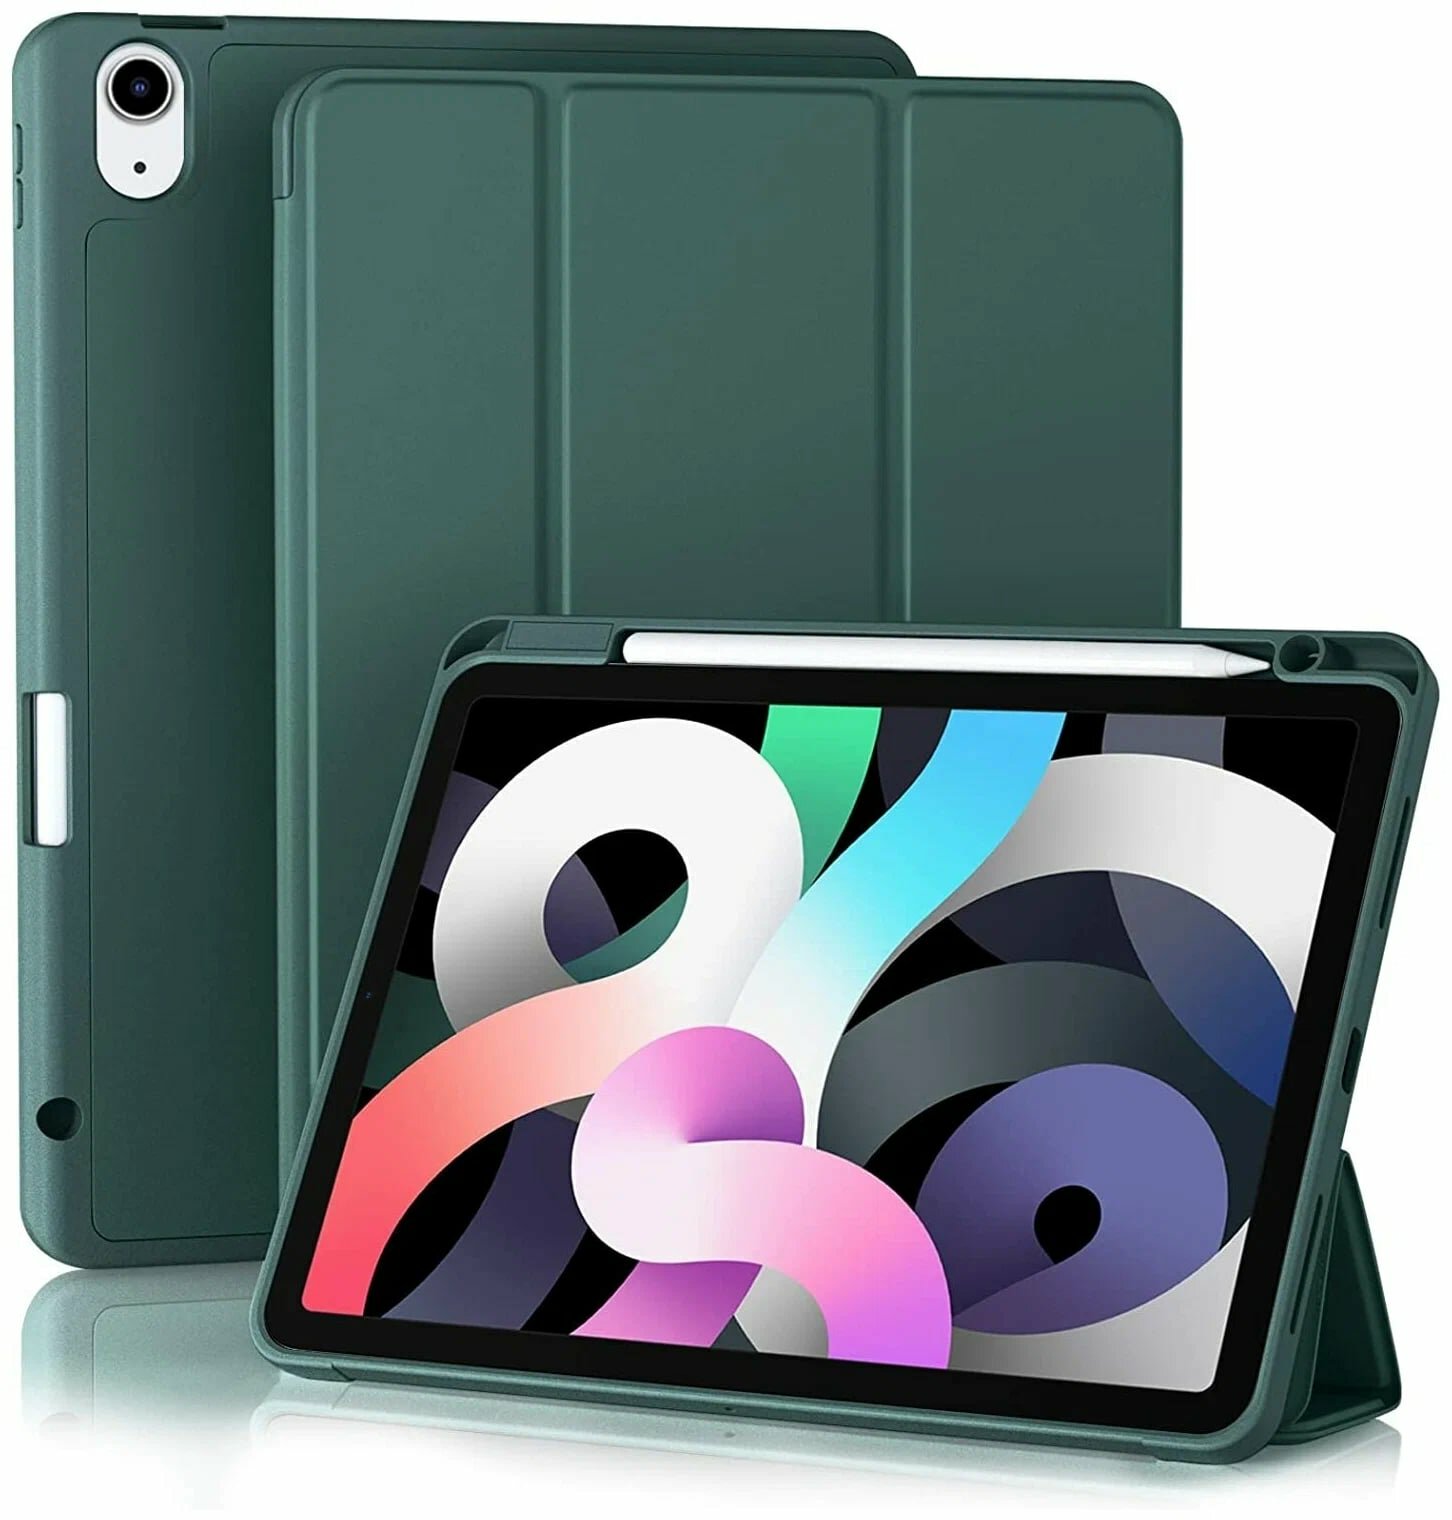 Чехол книжка для iPad Air 4 (10.9", 2020) / iPad Air 5 (10.9", 2022) с отделением для стилуса, темно-зеленый